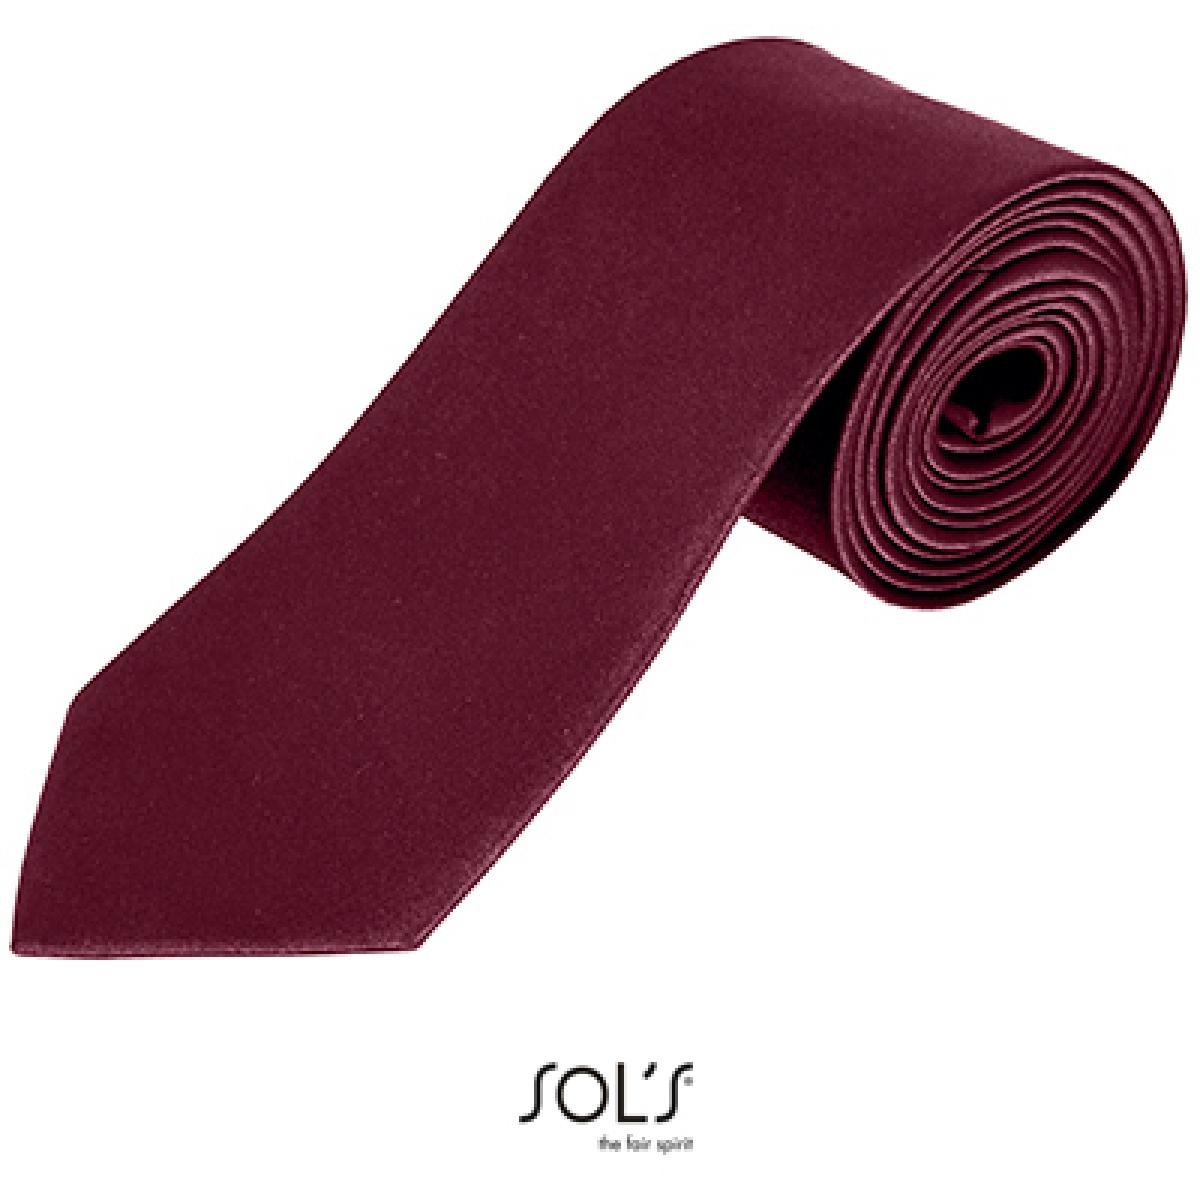 Hersteller: SOLs Herstellernummer: 02932 Artikelbezeichnung: Herren Krawatte Garner Tie - Länge: 150 cm, Breite: 7 cm" Farbe: Burgundy